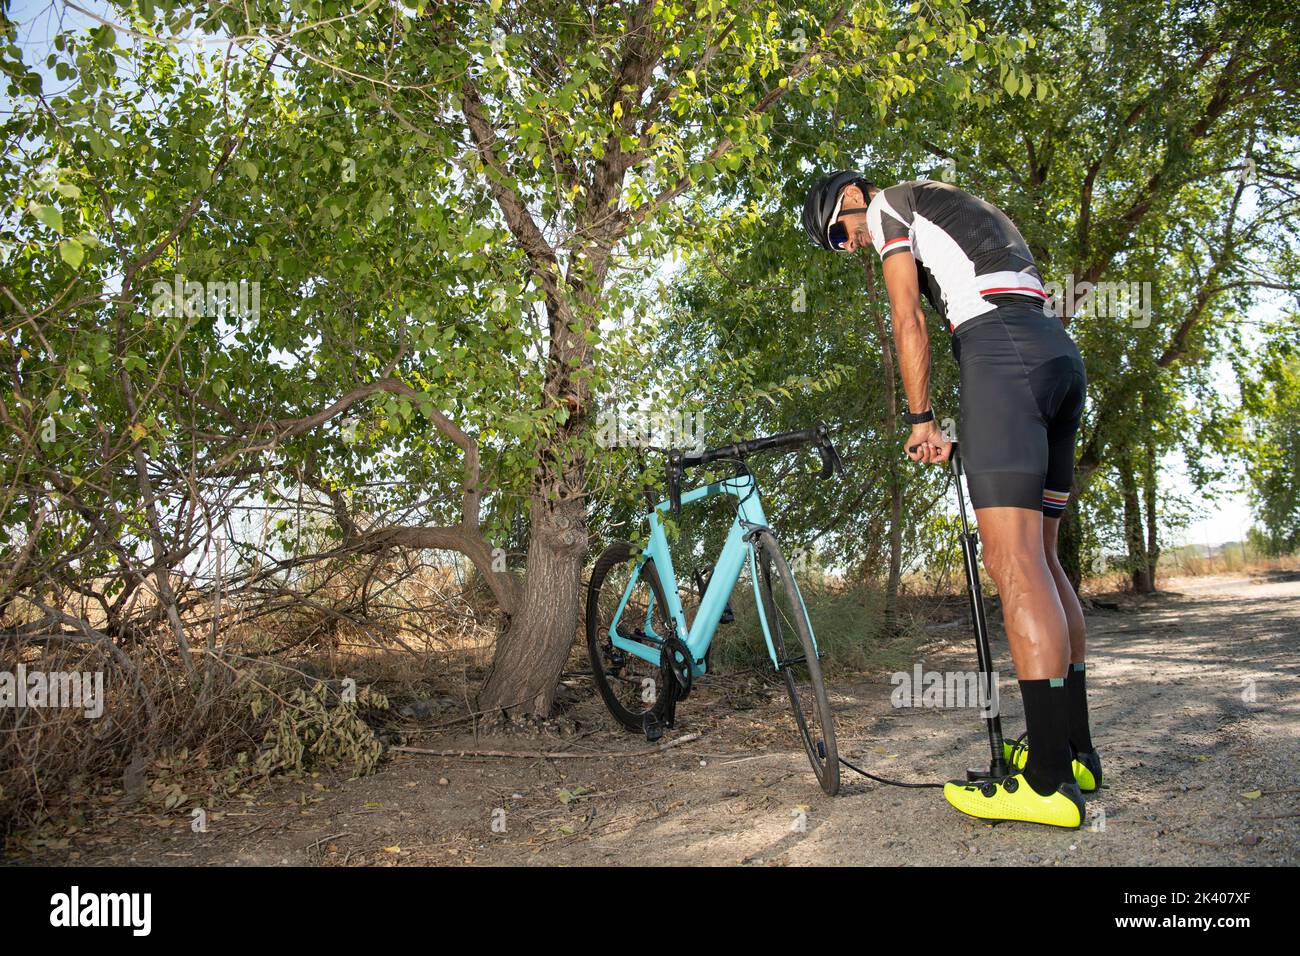 Un cycliste répare un vélo sur une route forestière par temps ensoleillé Banque D'Images